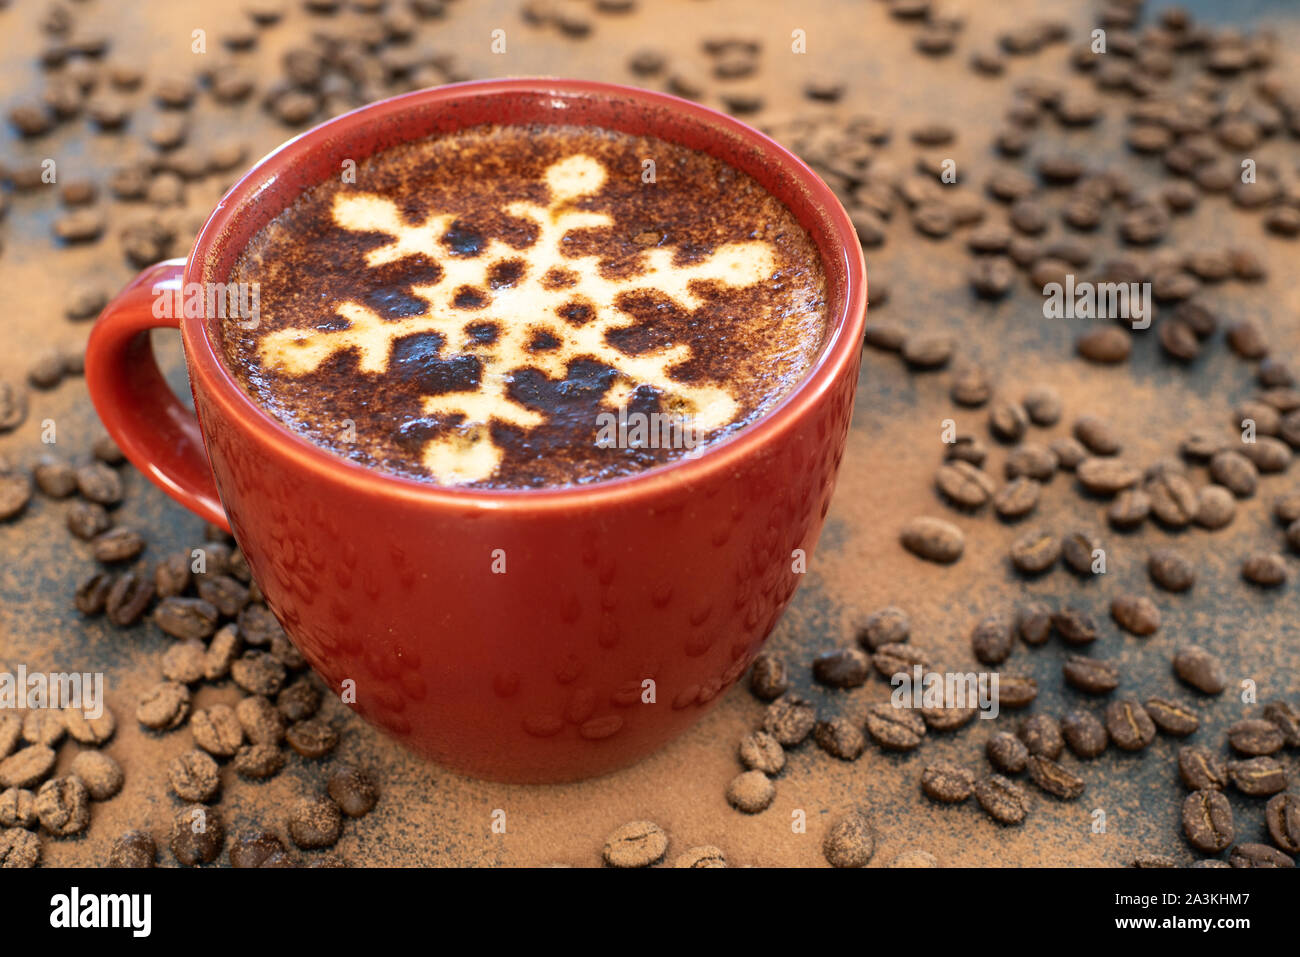 Cappuccino & chocolate snowflake motif, fondo de chocolate y la dispersión de los granos de café, establece el escenario para una bebida reconfortante navideños Foto de stock